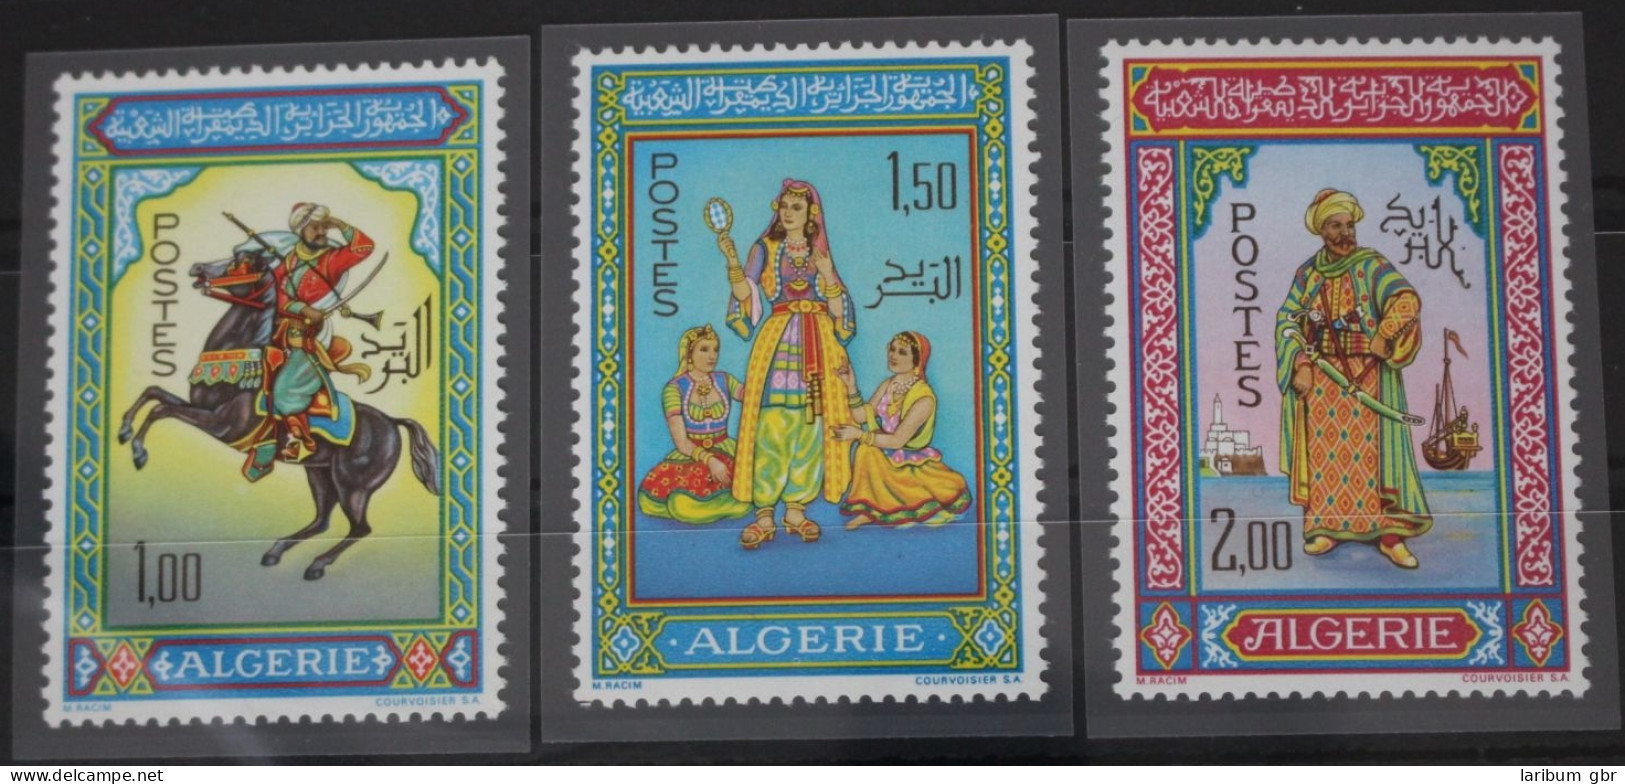 Algerien 464-466 Postfrisch #FT731 - Algeria (1962-...)